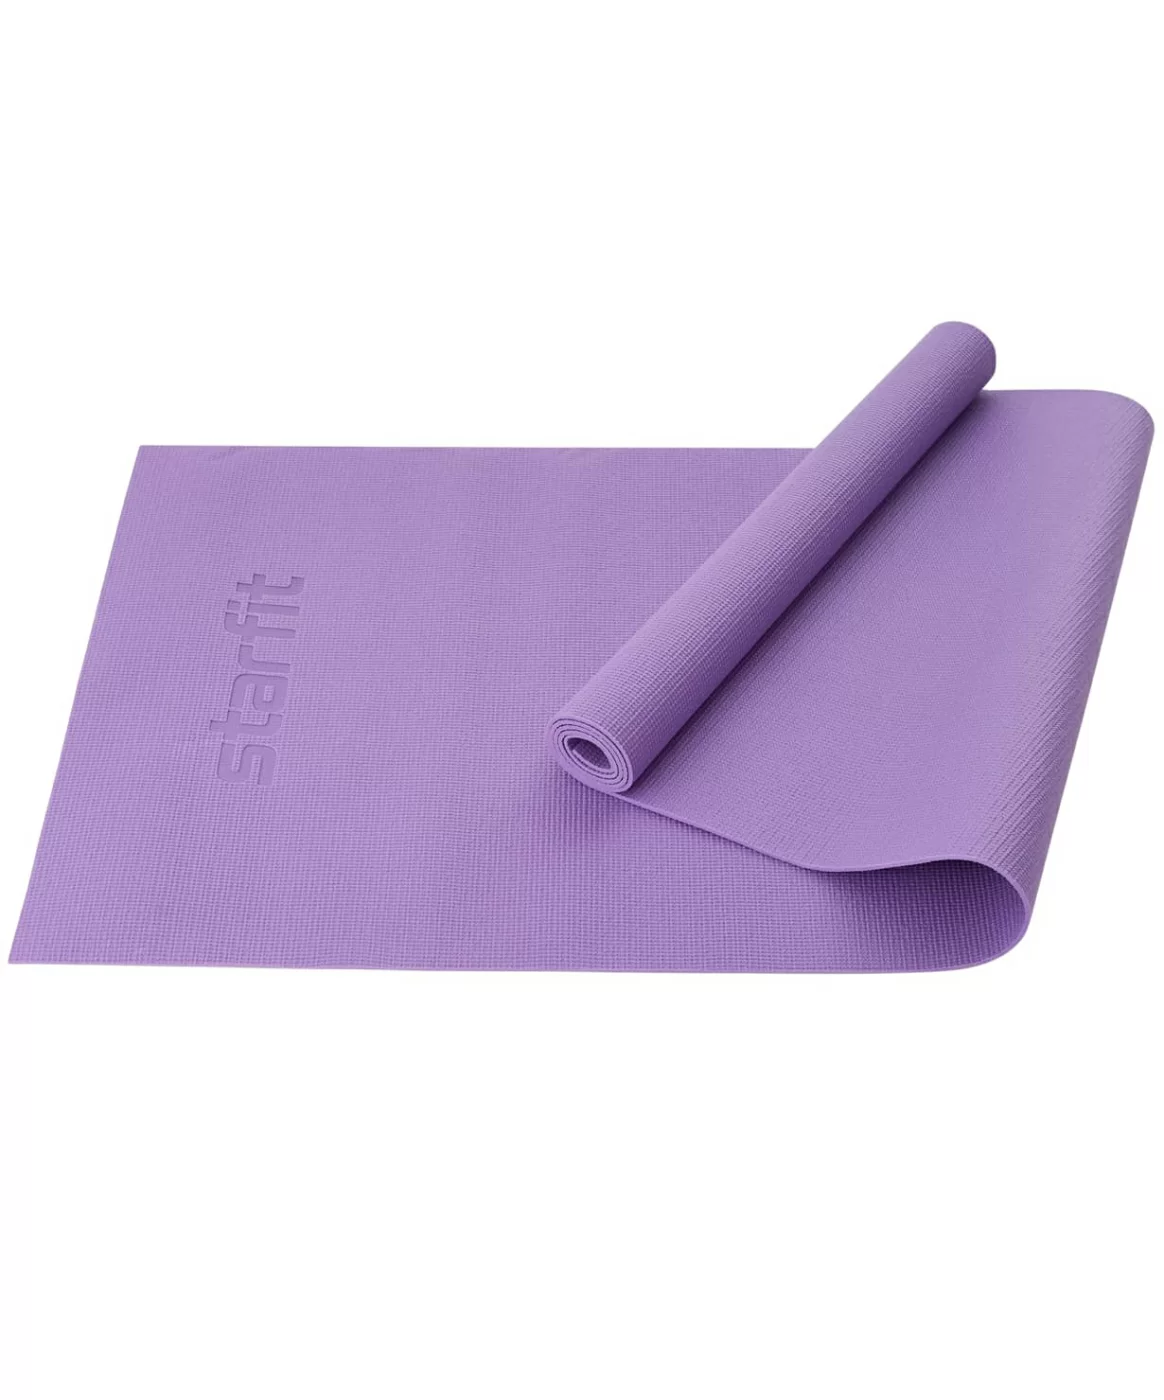 Реальное фото Коврик для йоги 183x61x0,3 см StarFit FM-101 PVC фиолетовый пастель 1587 от магазина СпортЕВ